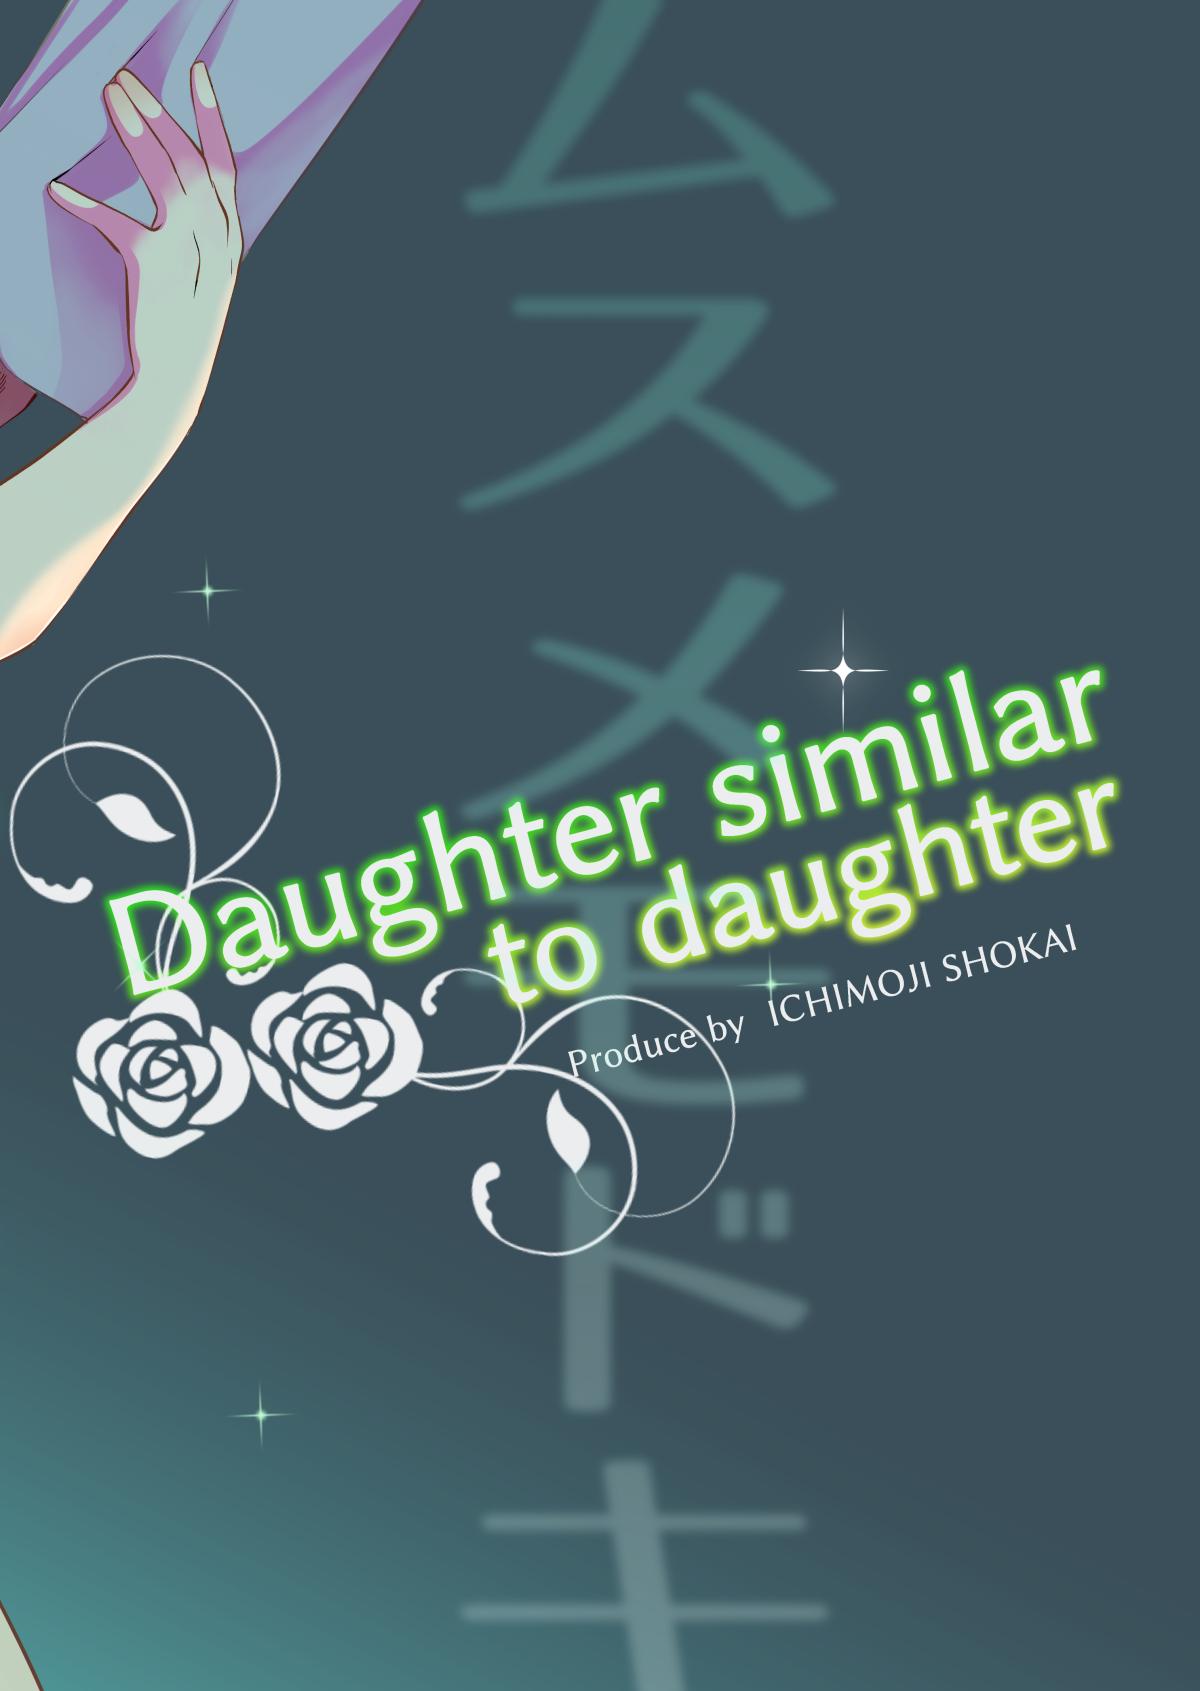 Musume Modoki - Daughter similar to daughter 3 40